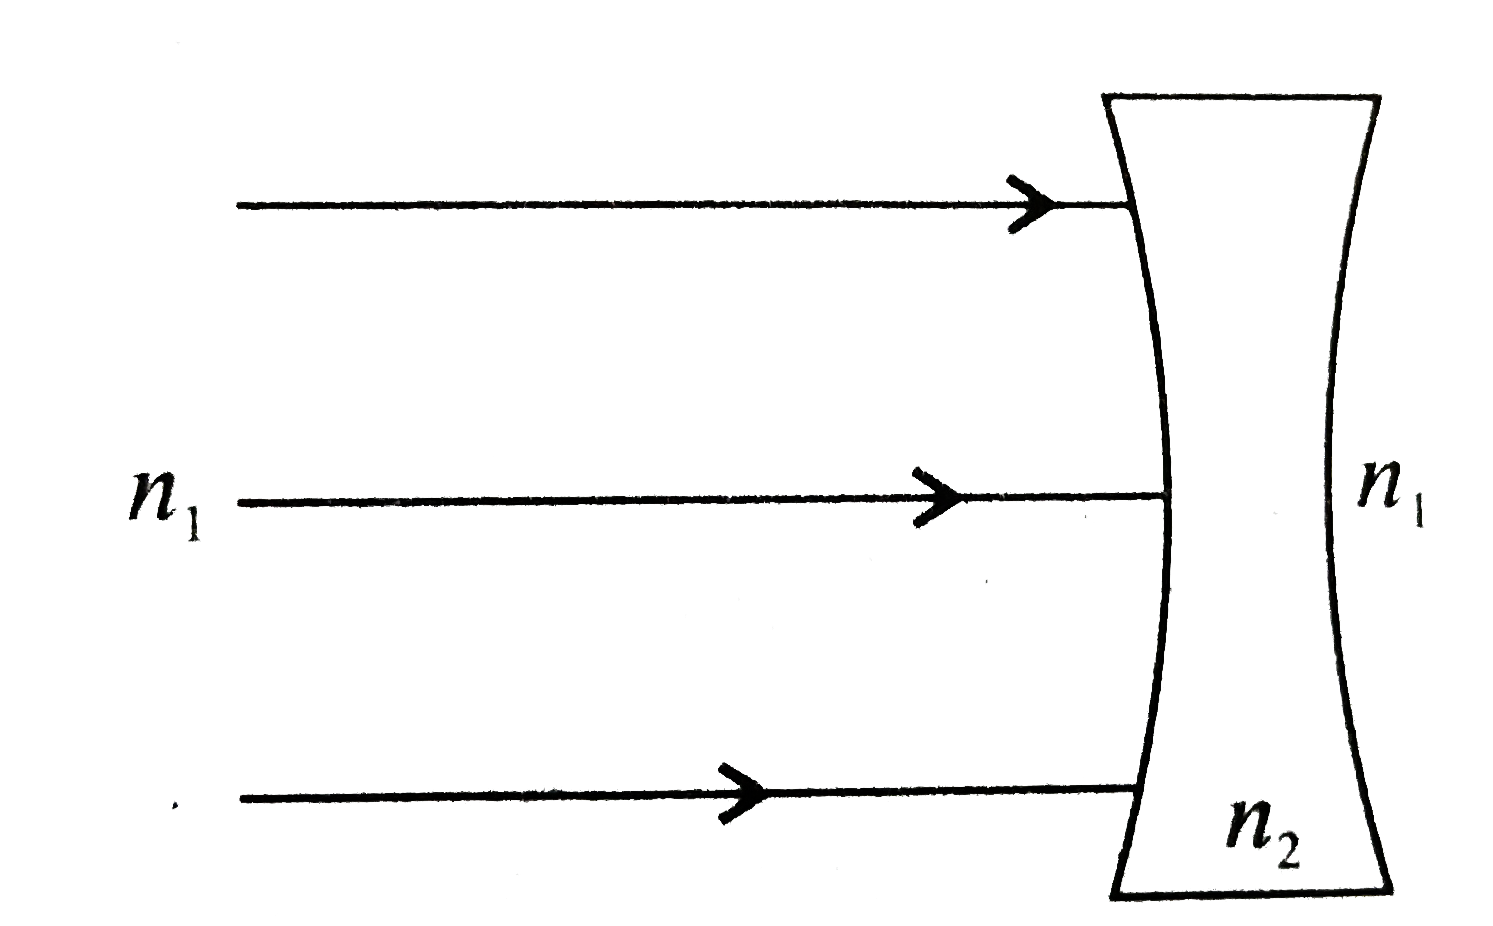 उपयुर्क्त चित्र में लेंस के अपवर्तन के बाद निर्गत किरण का मार्ग बनाइये यदि n(1) gt n(2) जहाँ n(1) व n(2) माध्यम के अपवर्तनांक है।